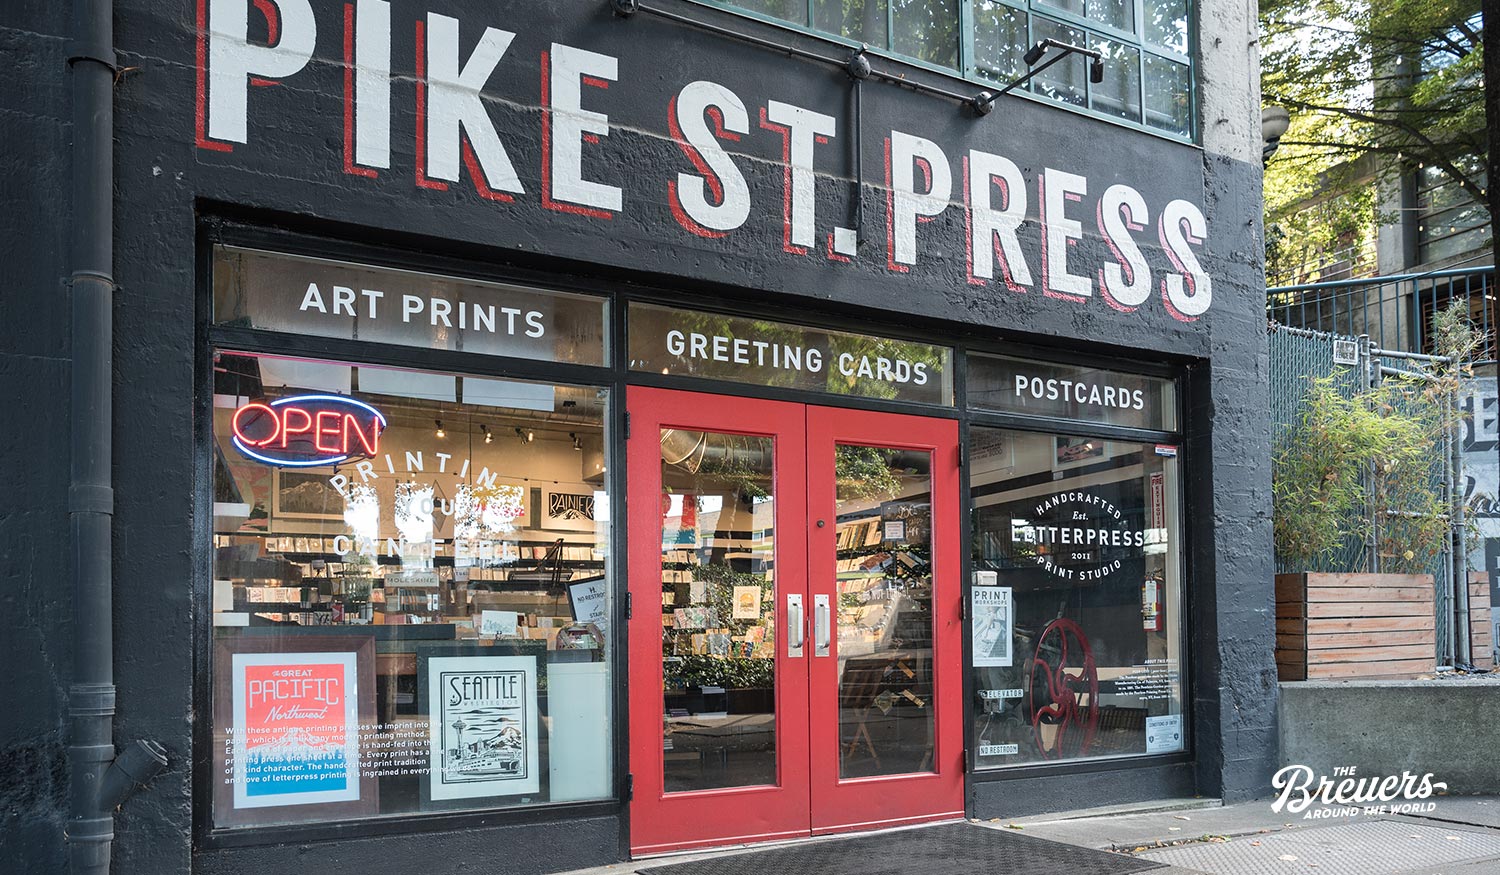 Pike Street Letterpress Shop in Seattle